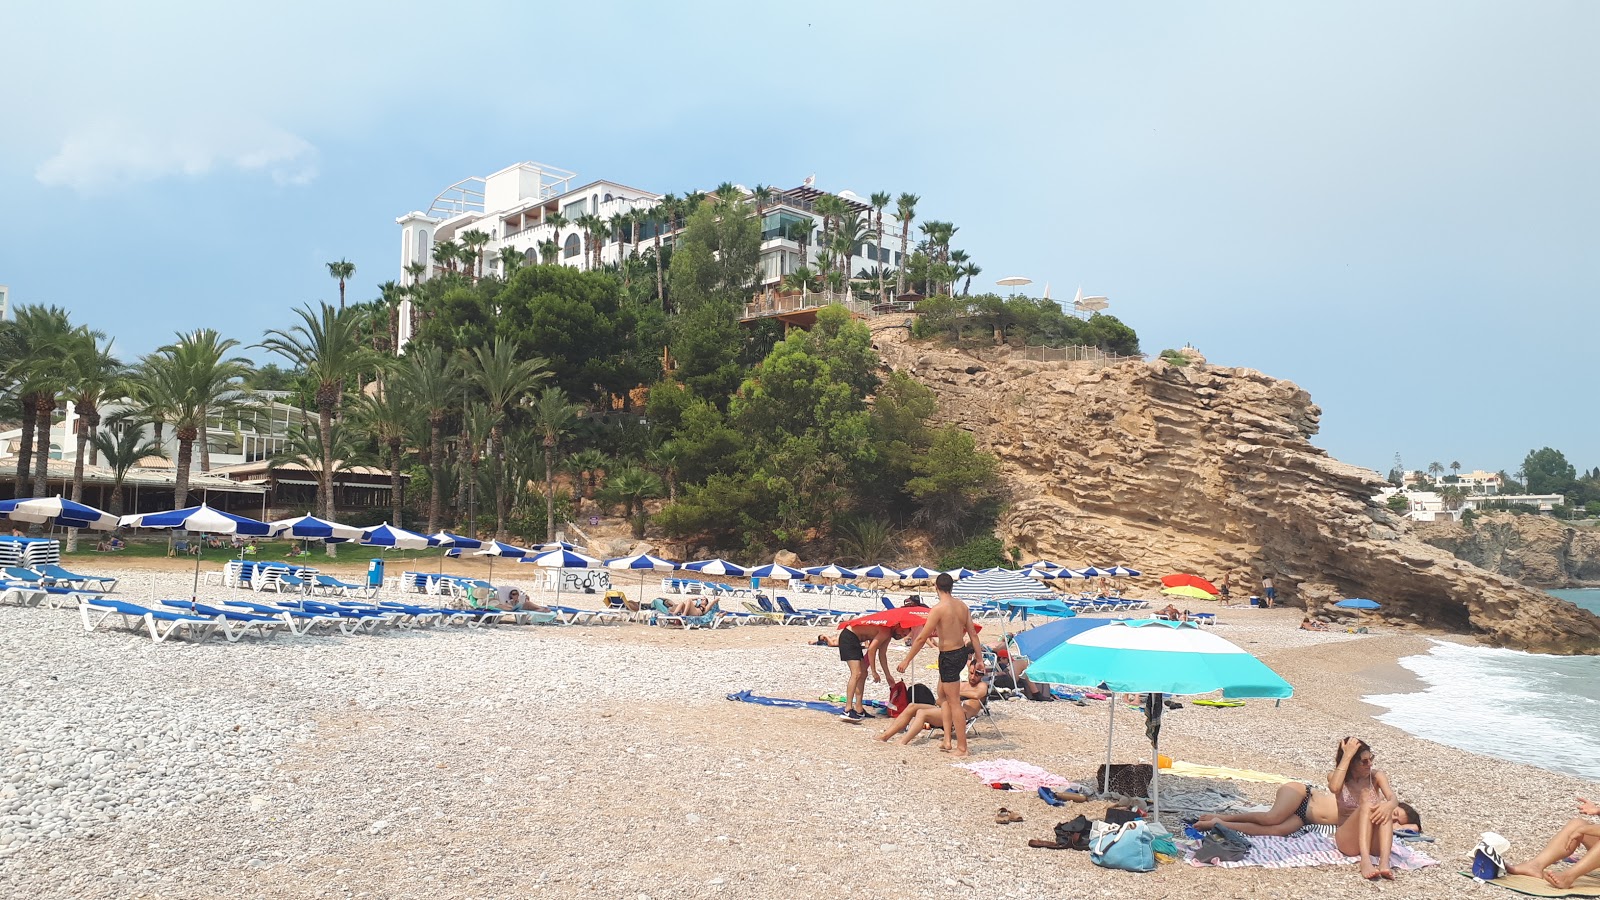 Playa la Caleta'in fotoğrafı imkanlar alanı